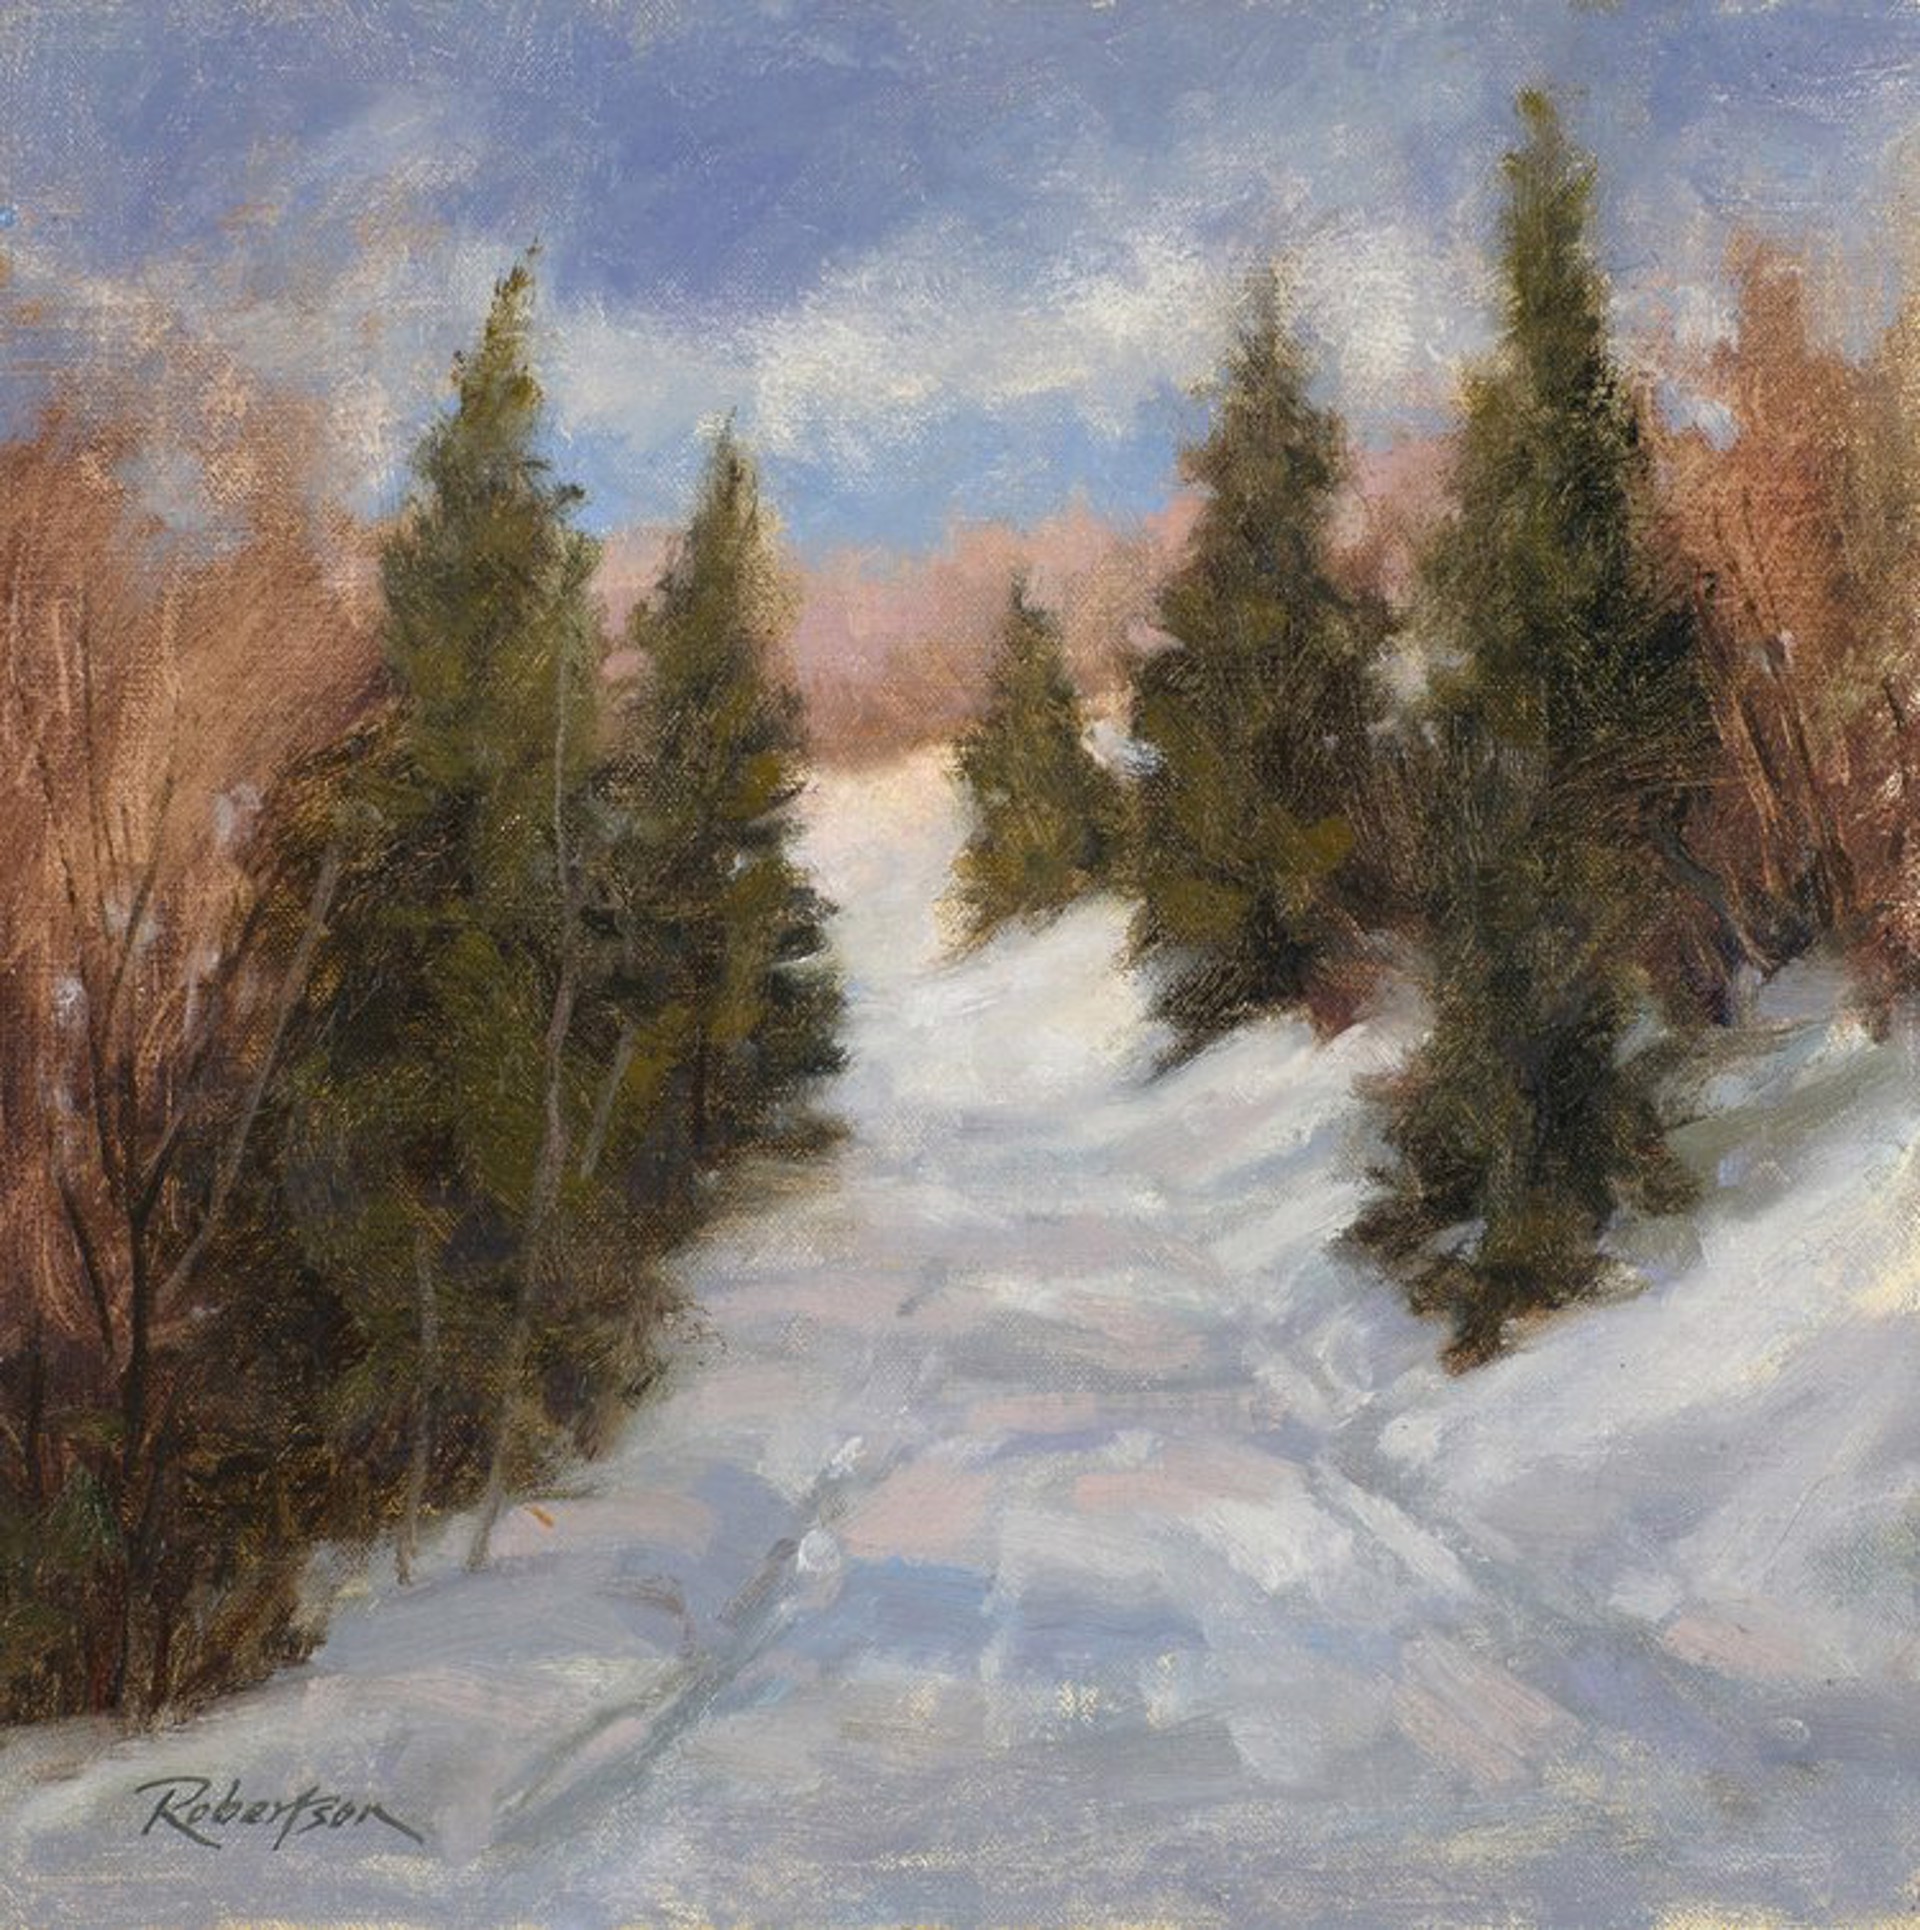 A Winter Walk by Cecilia Robertson